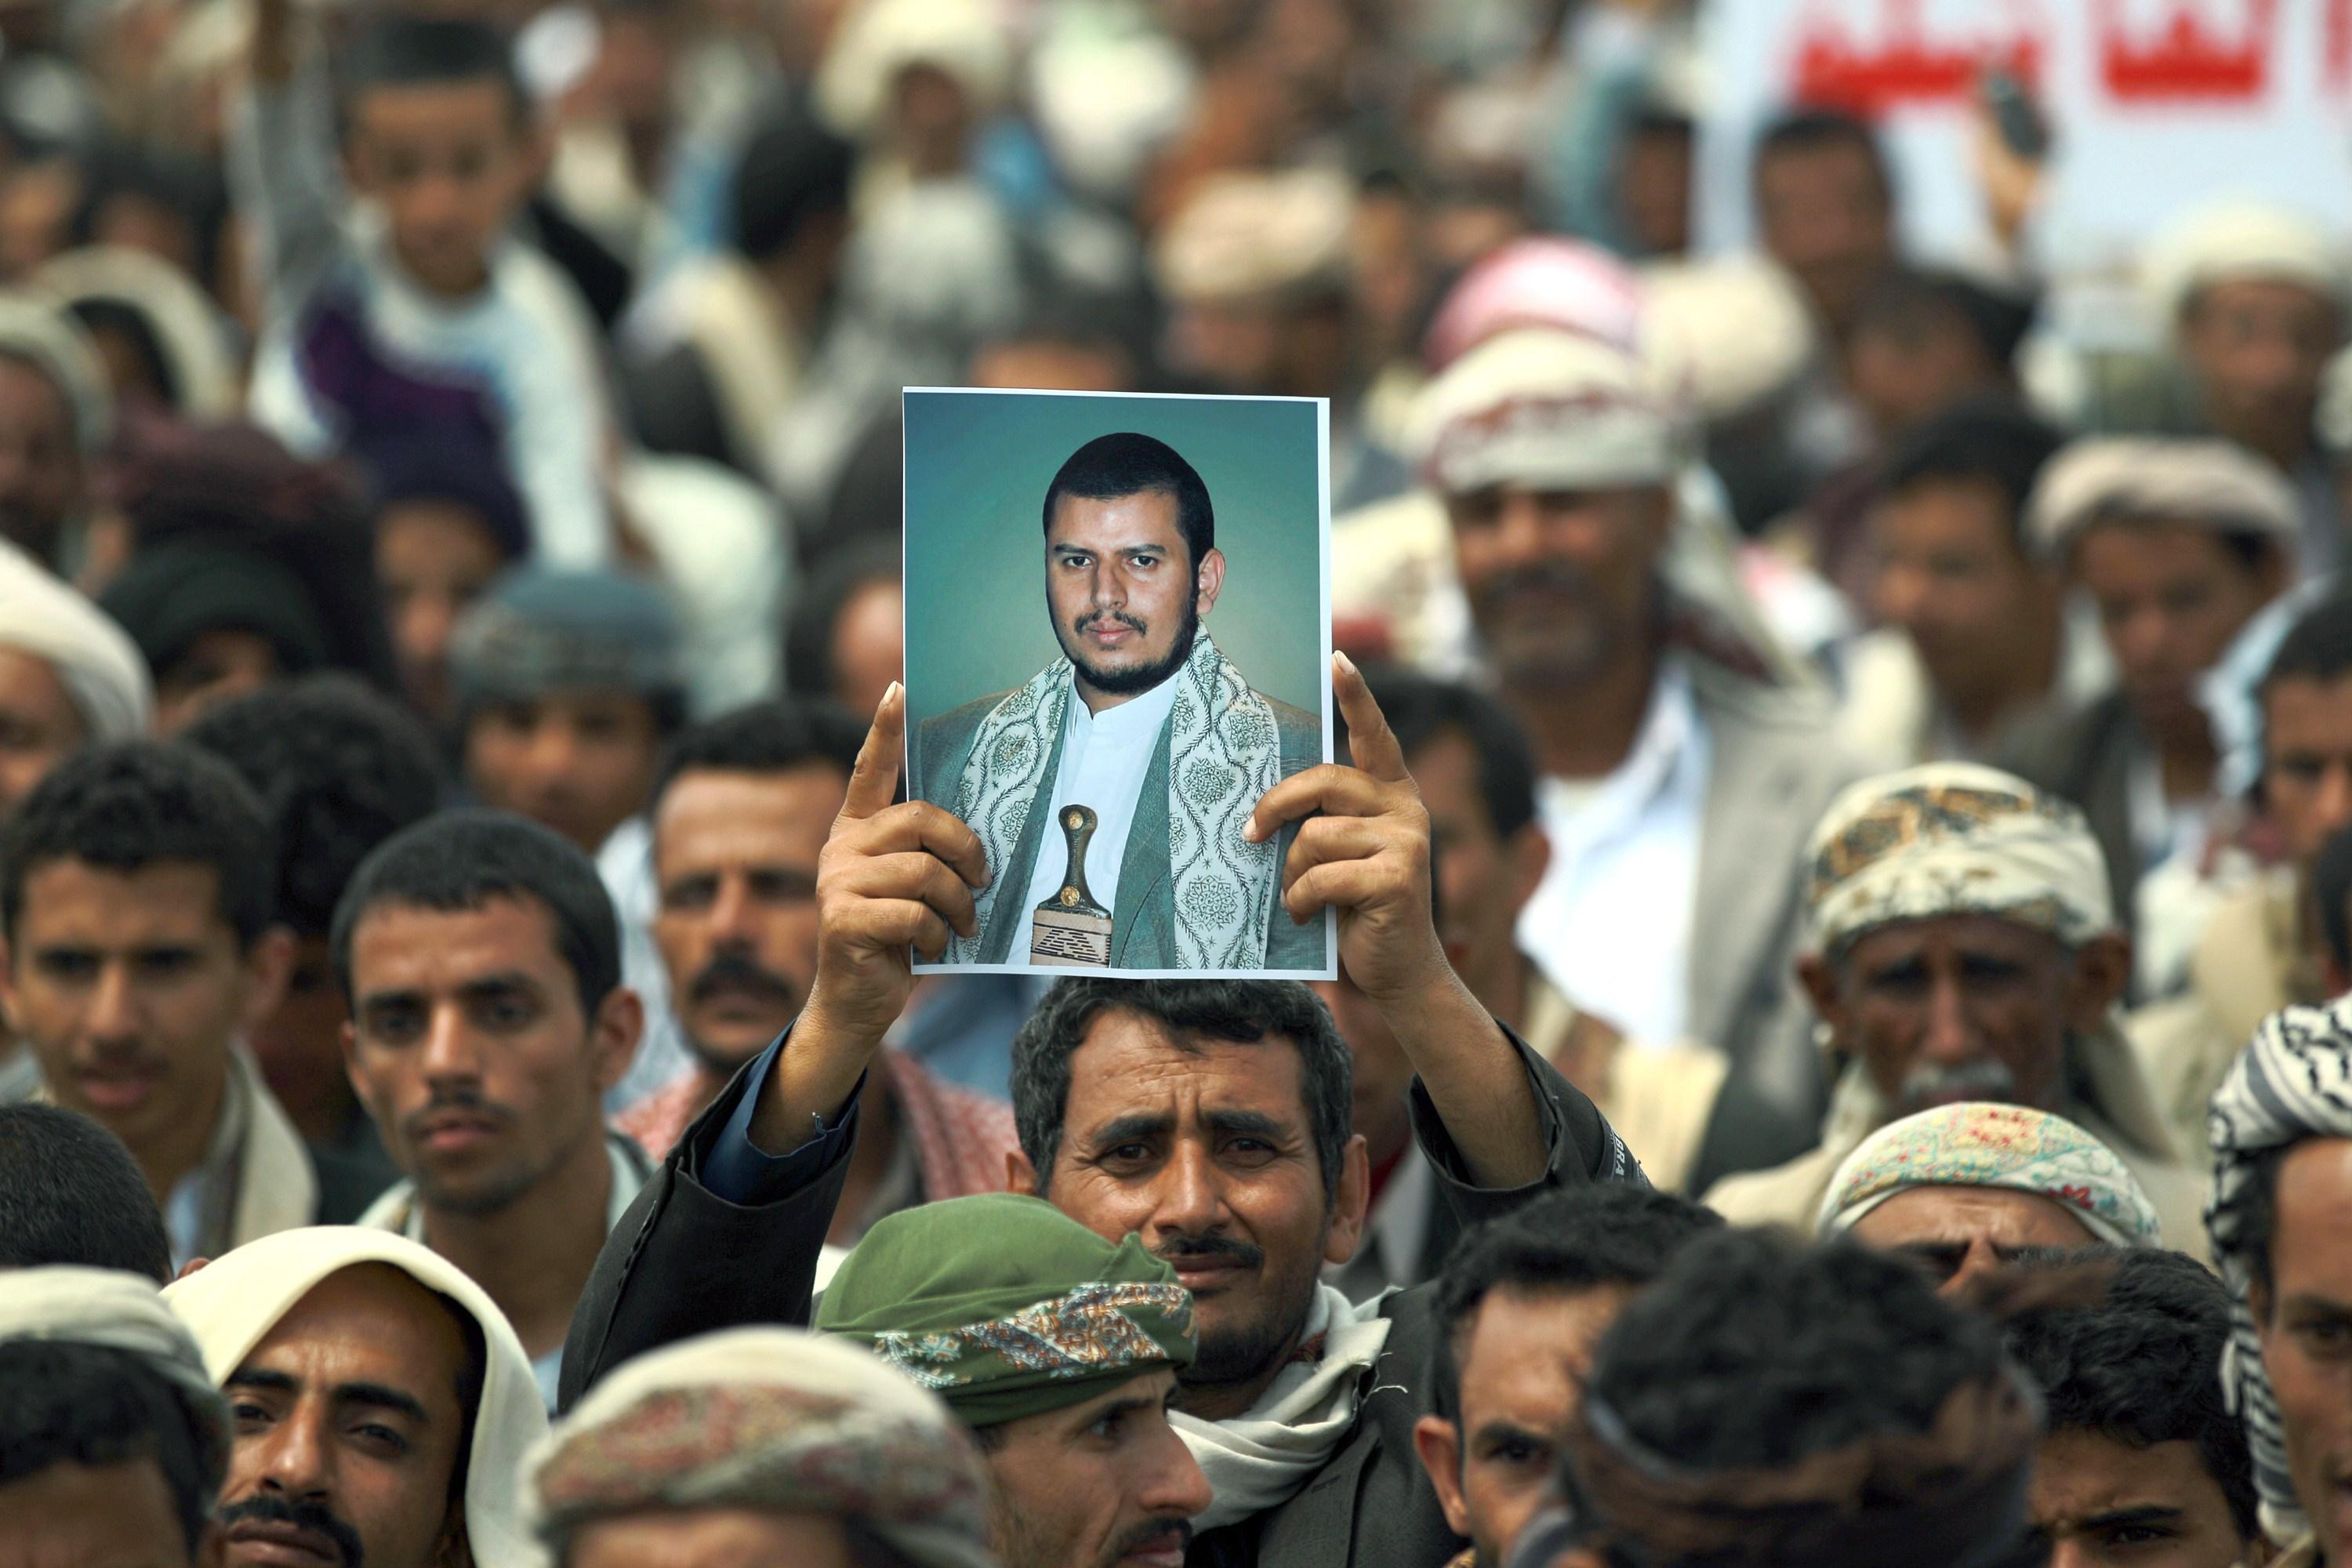 شاب من أسرة عبد الملك الحوثي يحصل على رتبة عسكرية رفيعة بدون أي مؤهلات (صورة)